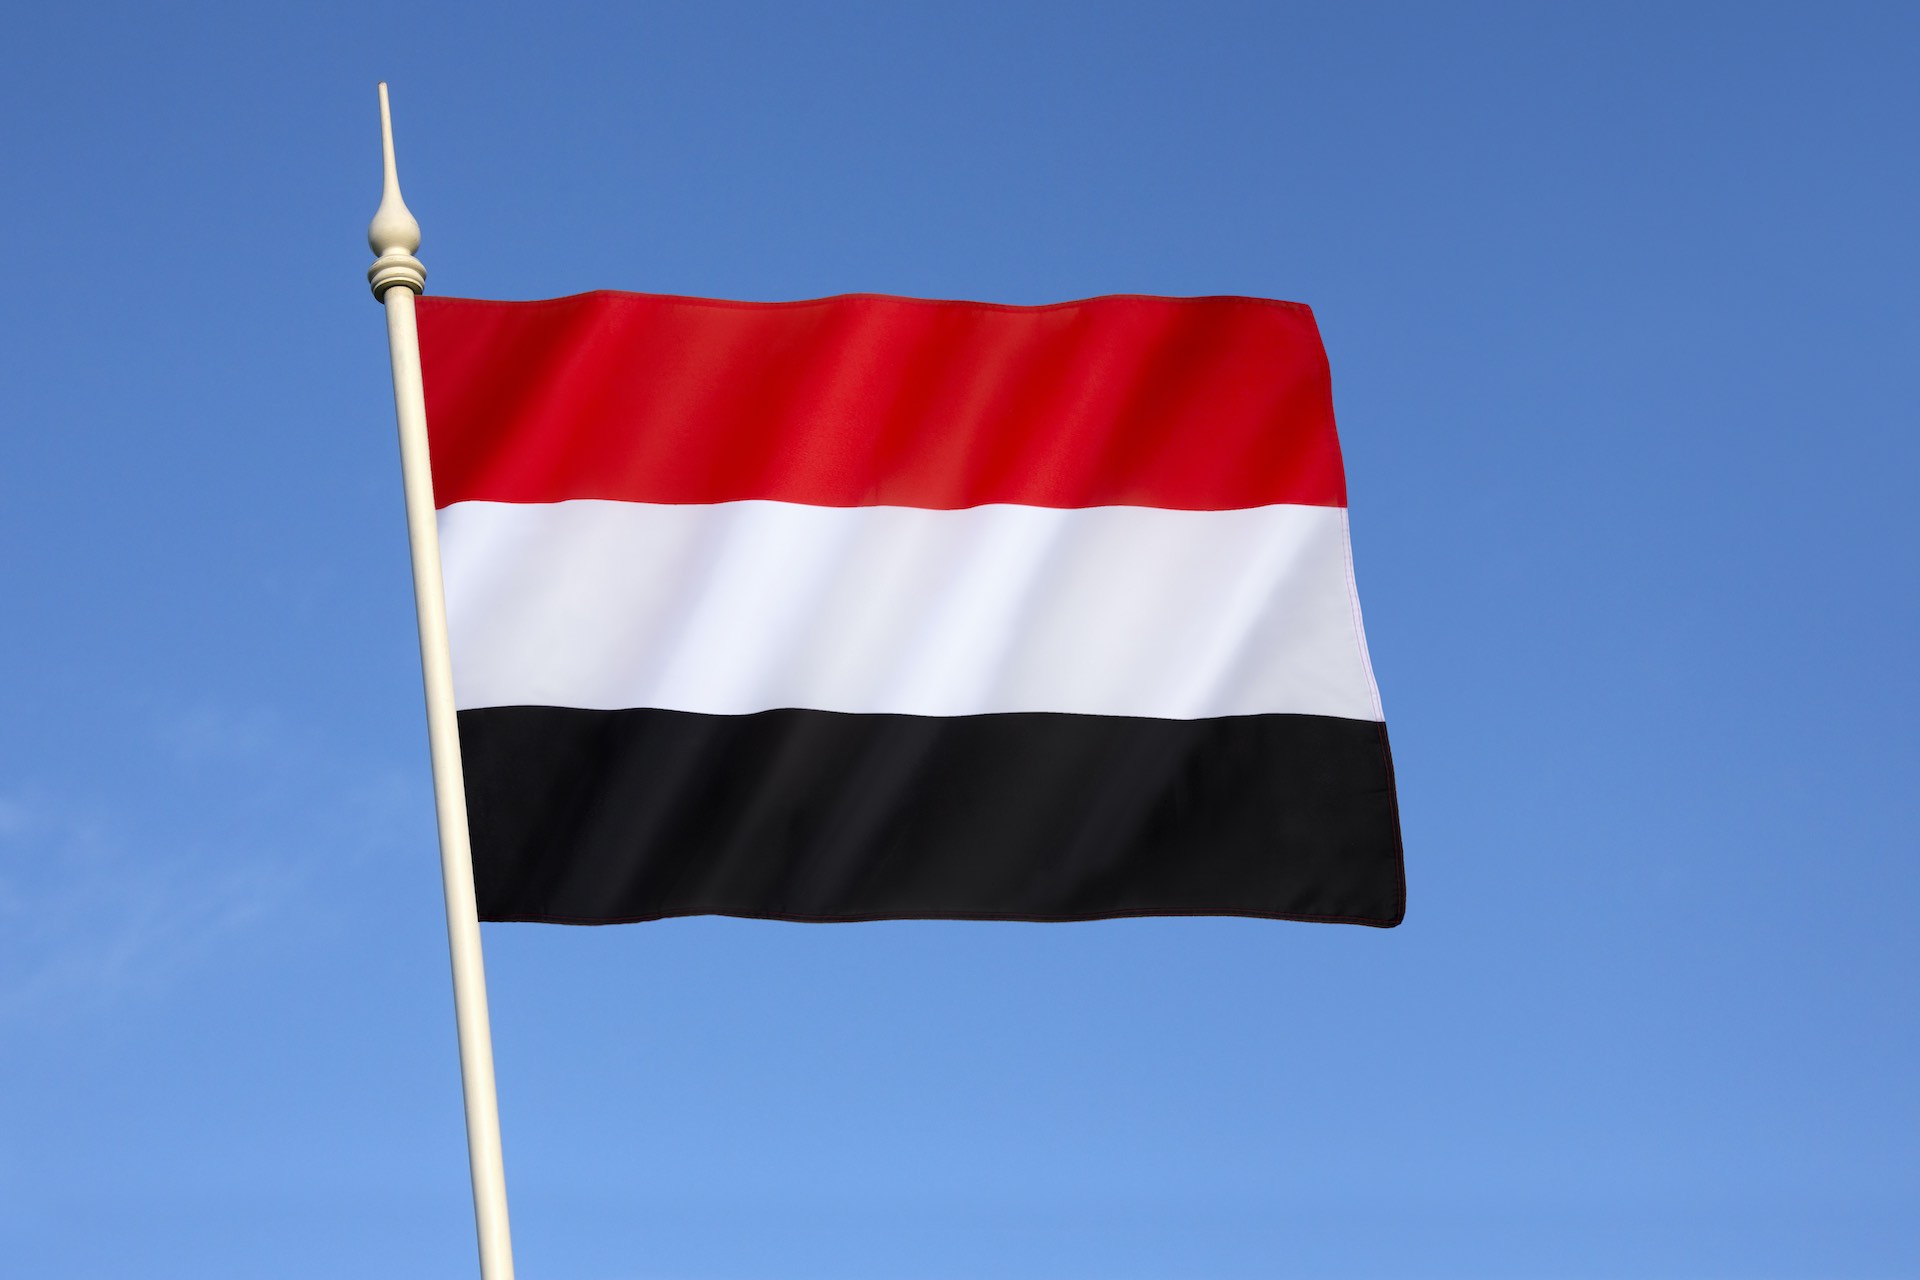 UN Truce Declaration in Yemen is welcomed by Egypt, Jordan, and Djibouti